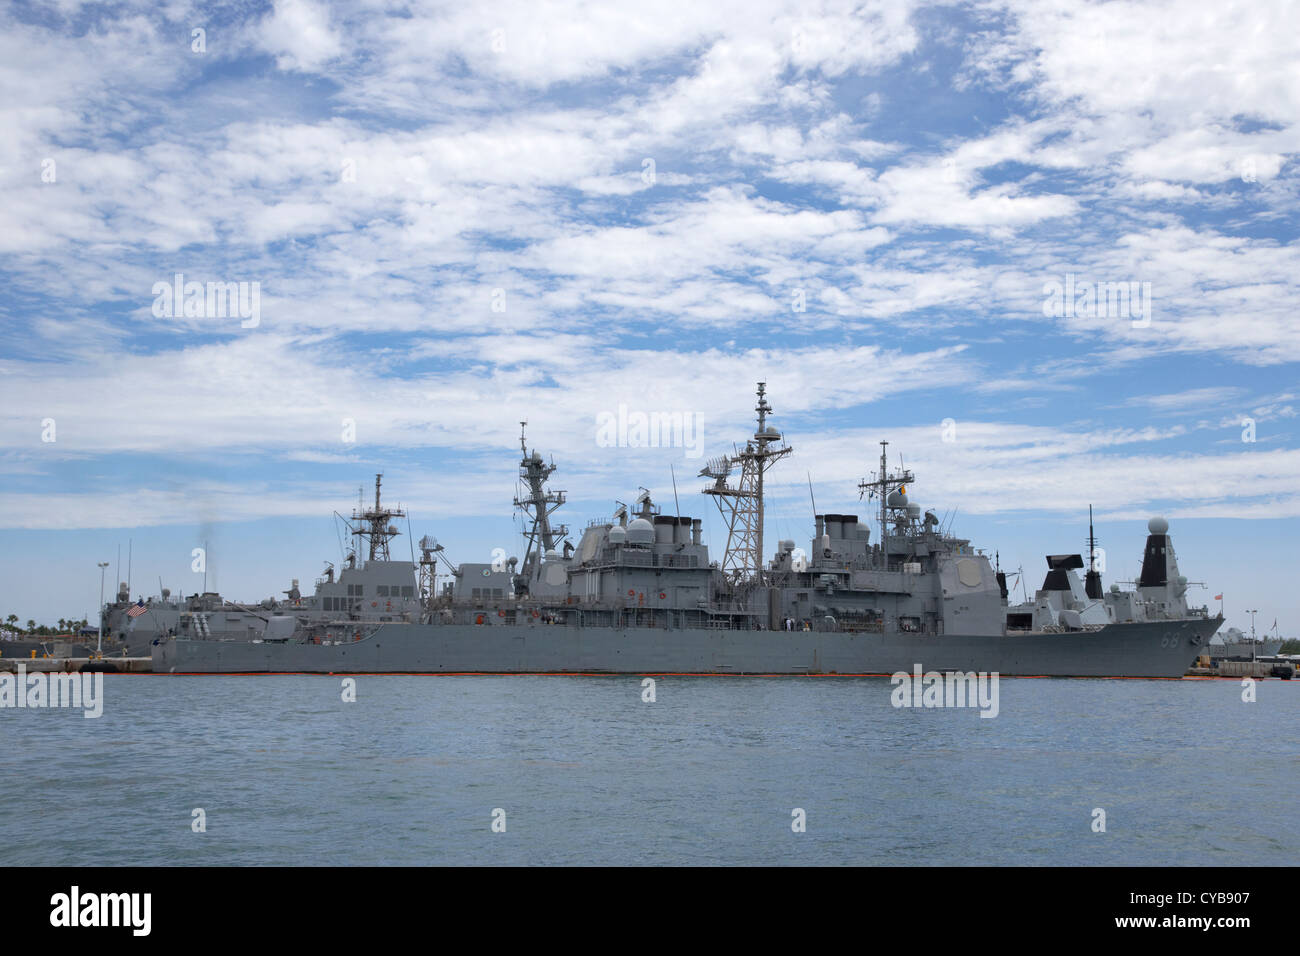 Crucero de misiles guiados uss anzio y buques de guerra de la Marina la mole del muelle del puerto de Key West Florida, EE.UU. Foto de stock